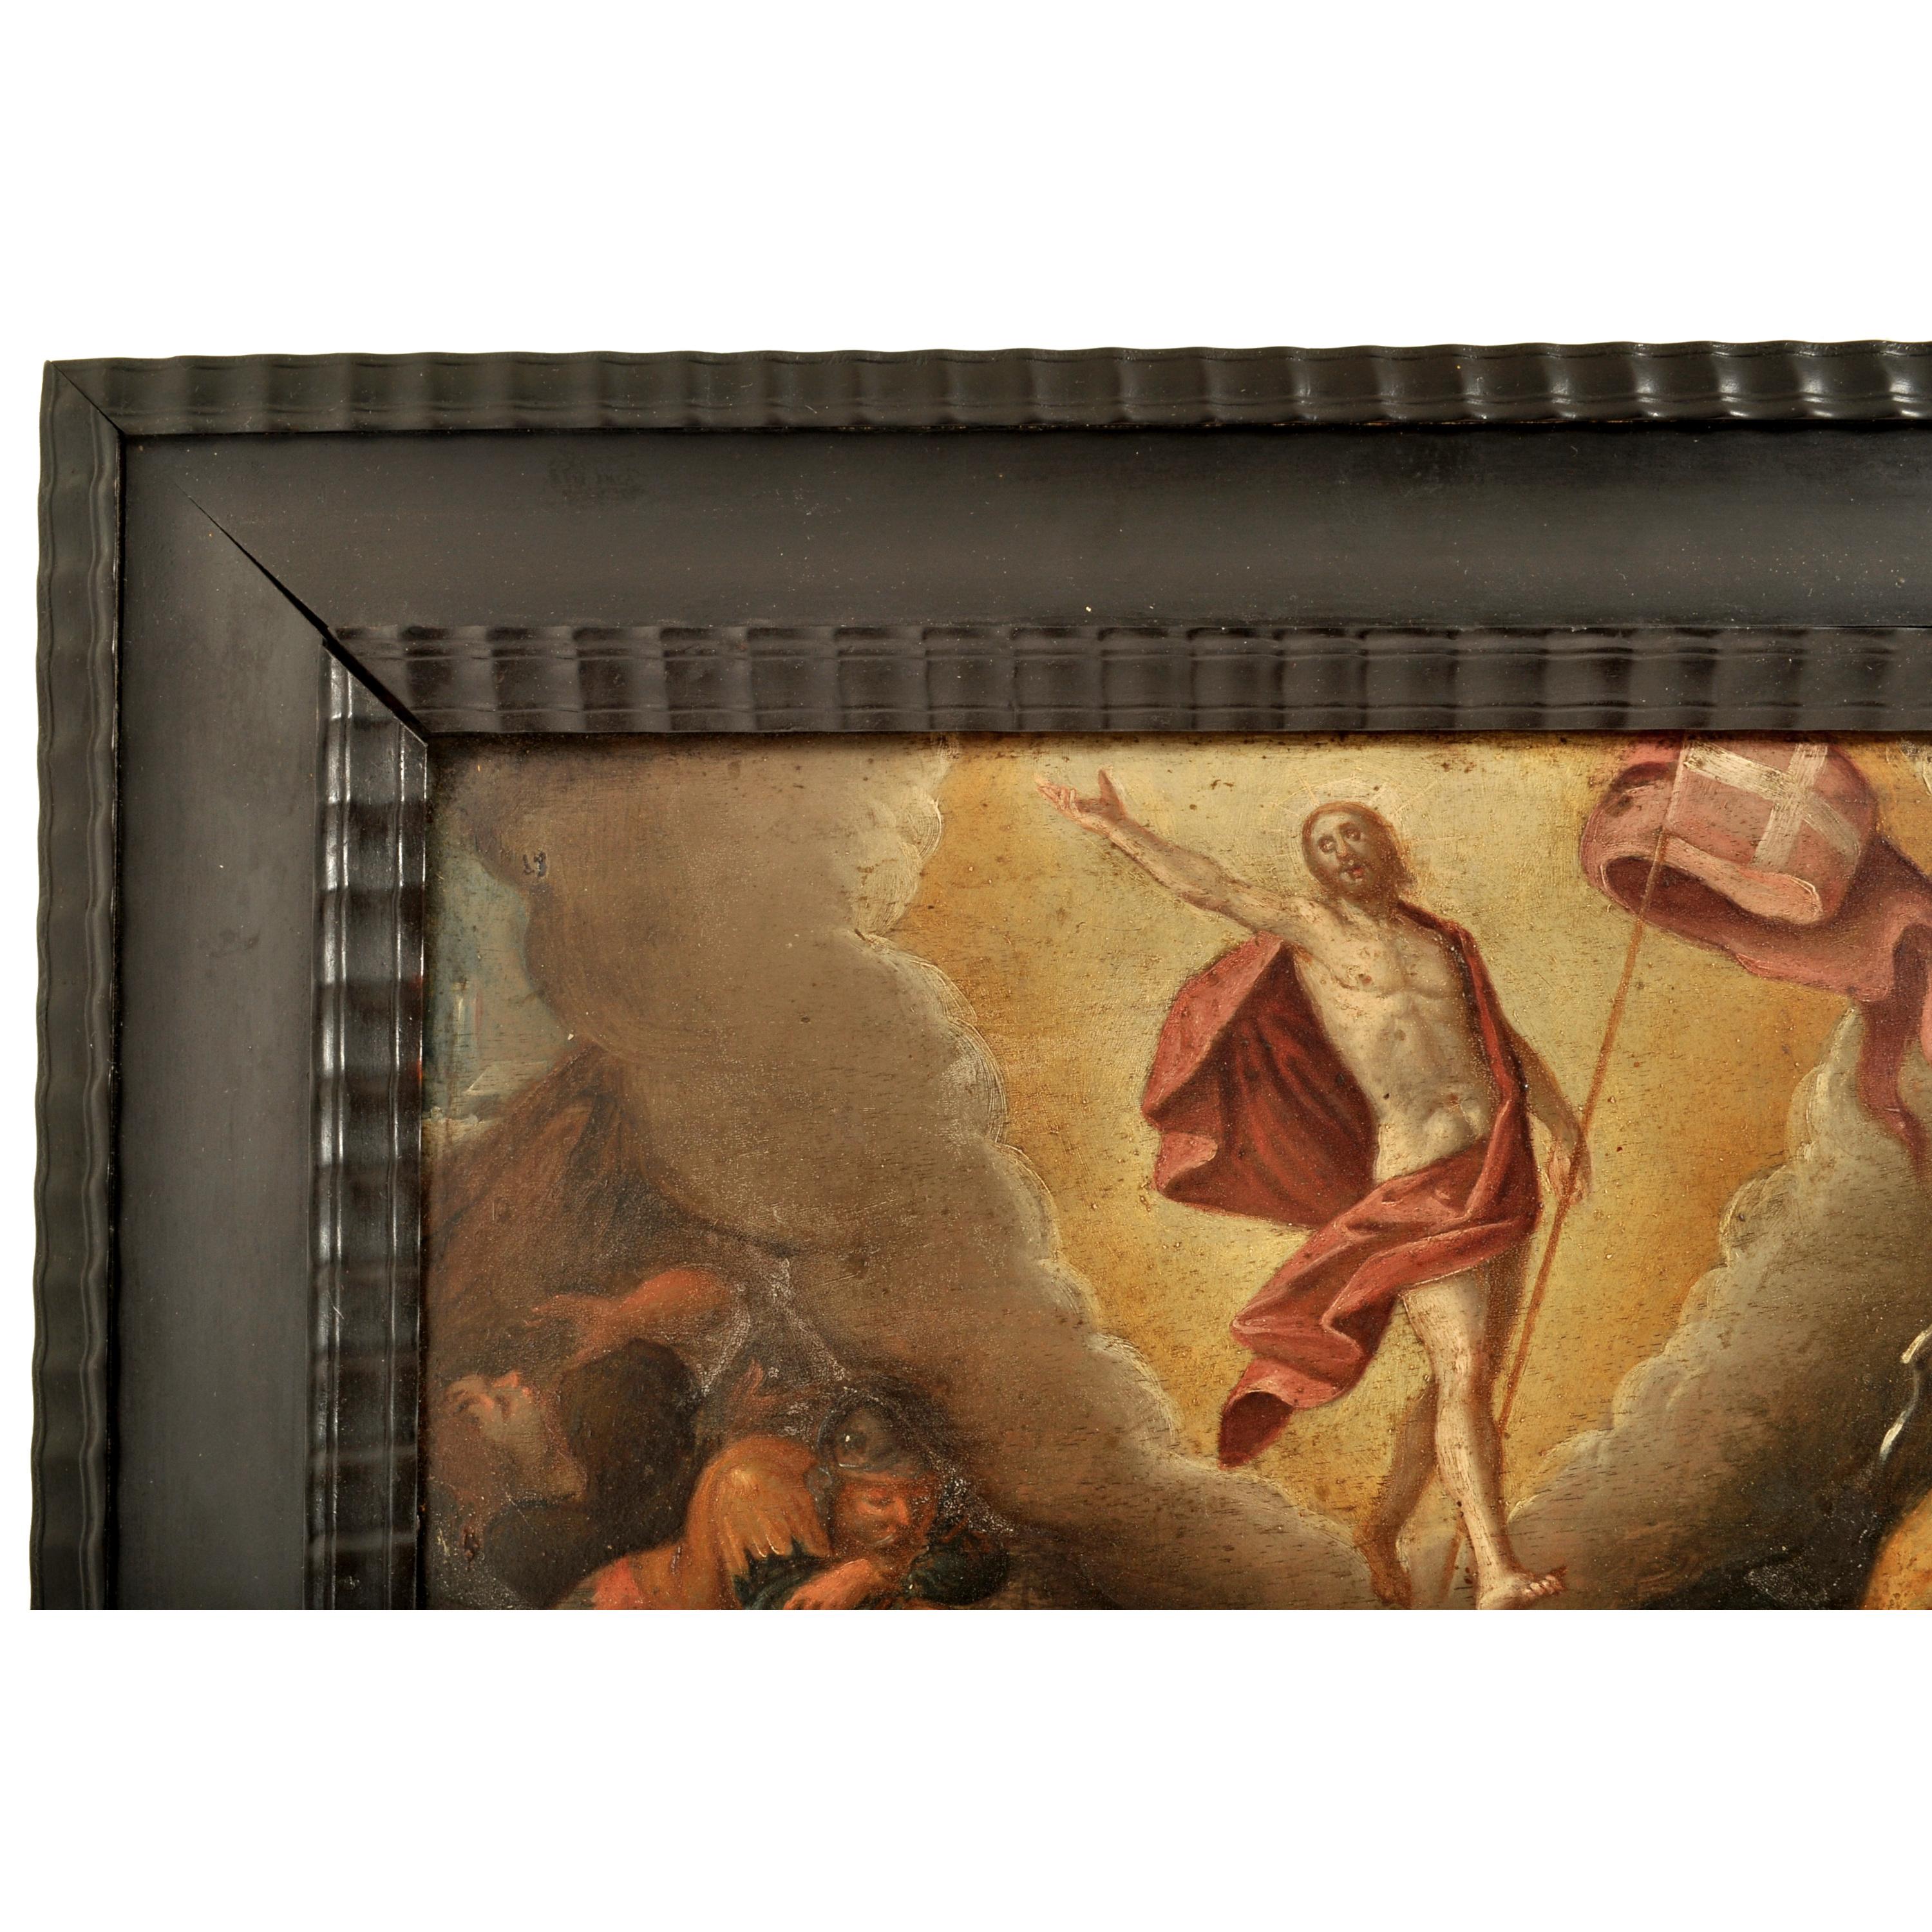 Antike religiöse Szene eines alten Meisters aus der nördlichen Renaissance des 16. Jahrhunderts, Ölgemälde (Niederländische Renaissance), Painting, von Christoph Schwarz